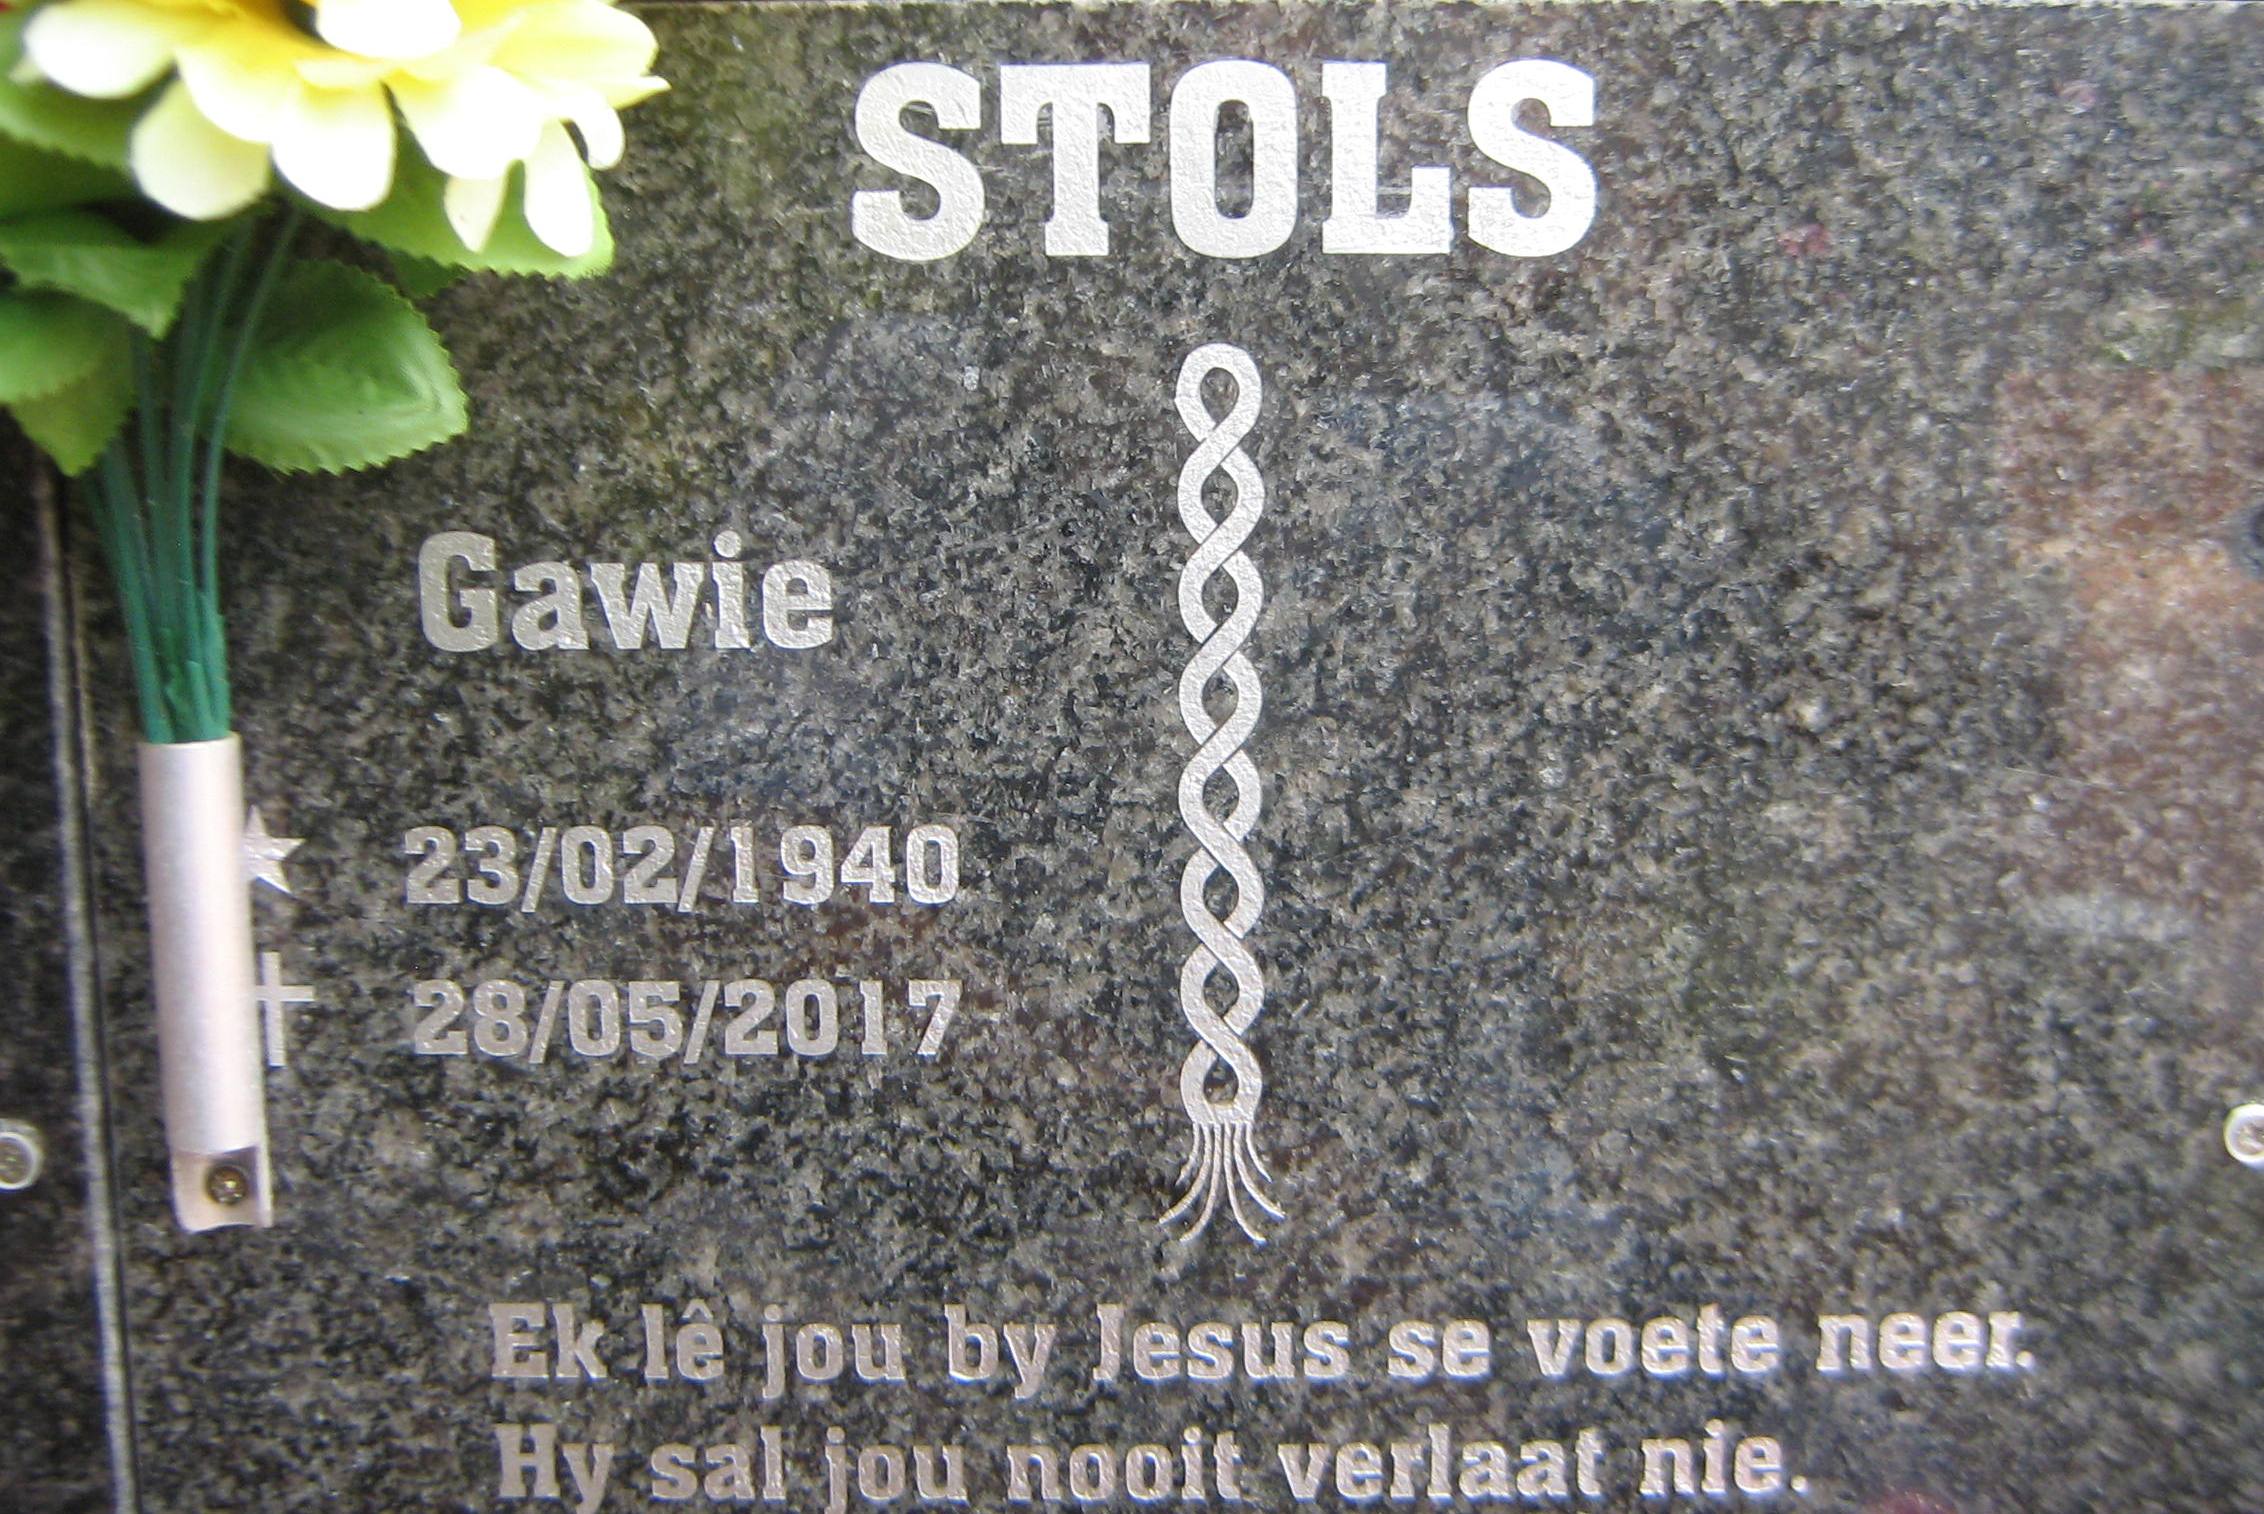 STOLS Gawie 1940-2017